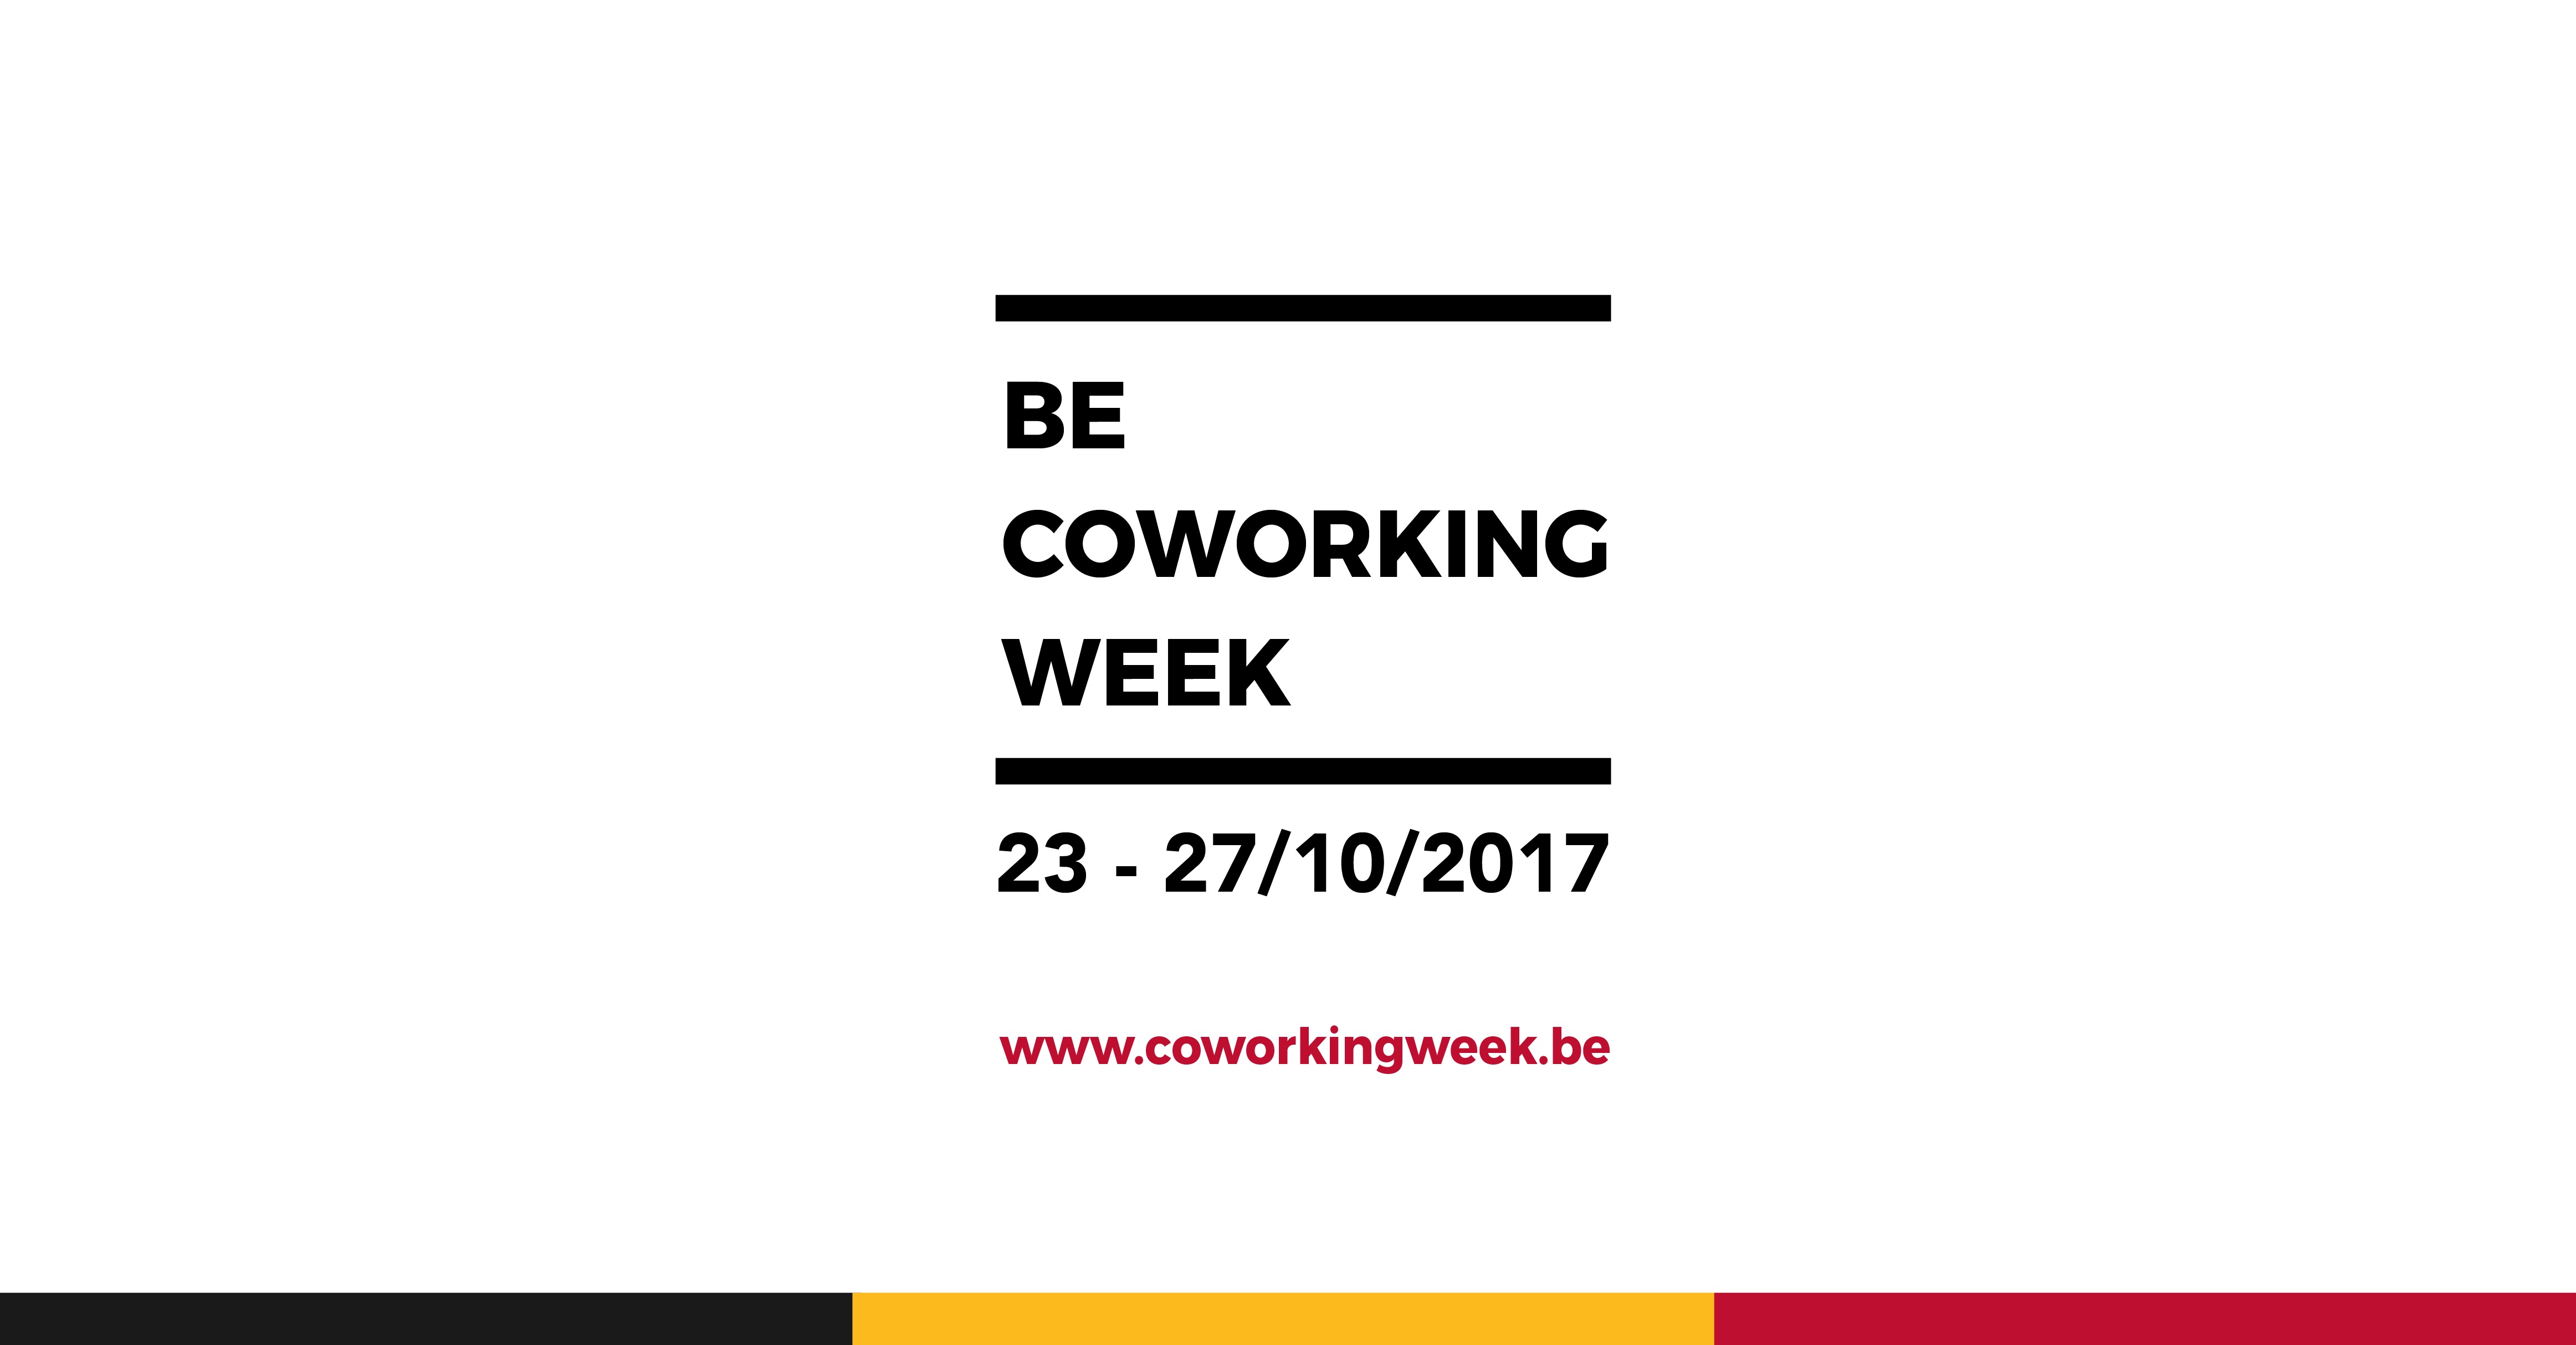 Semaine du coworking - Vos premiers pas à l'international (AWEX)